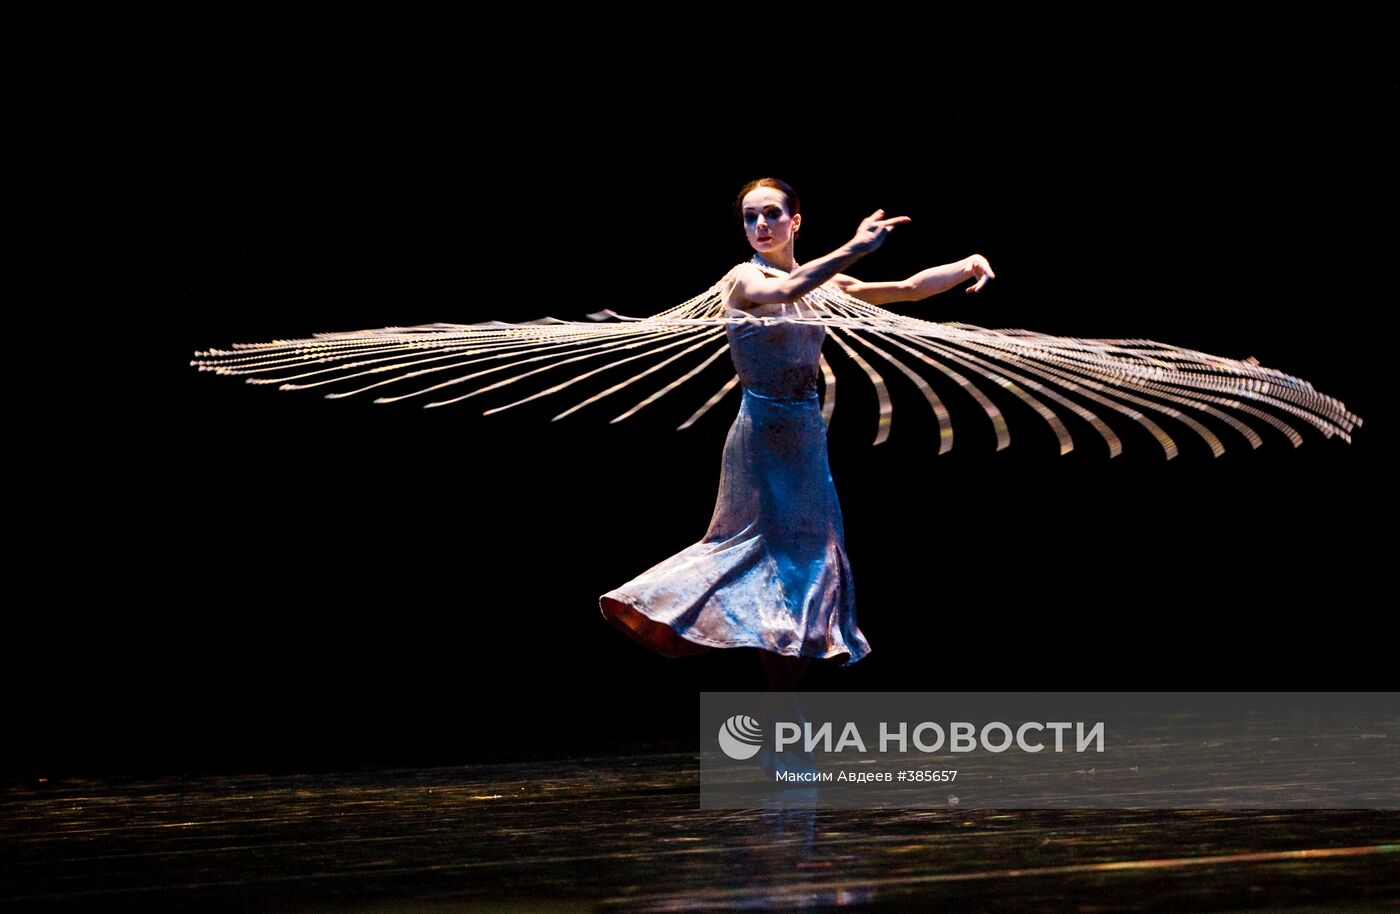 Диана Вишнева в проекте "Красота в движении"